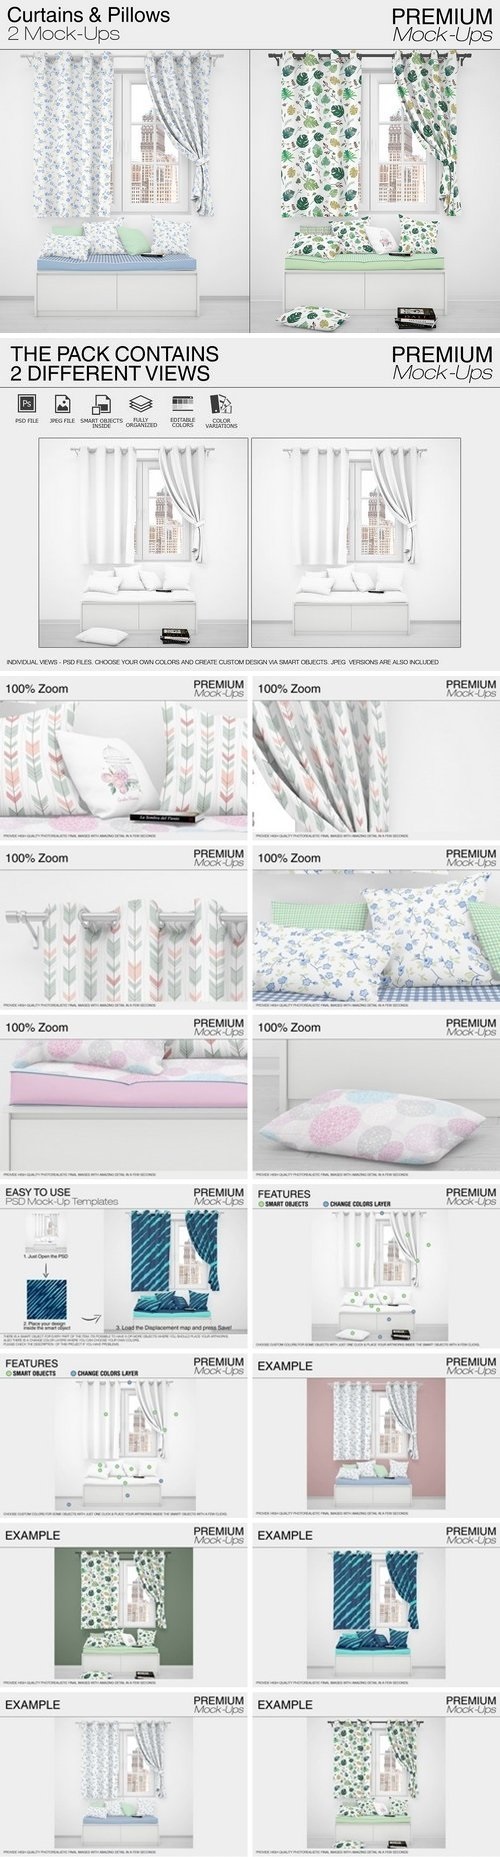 Pillows & Curtains - 2024712